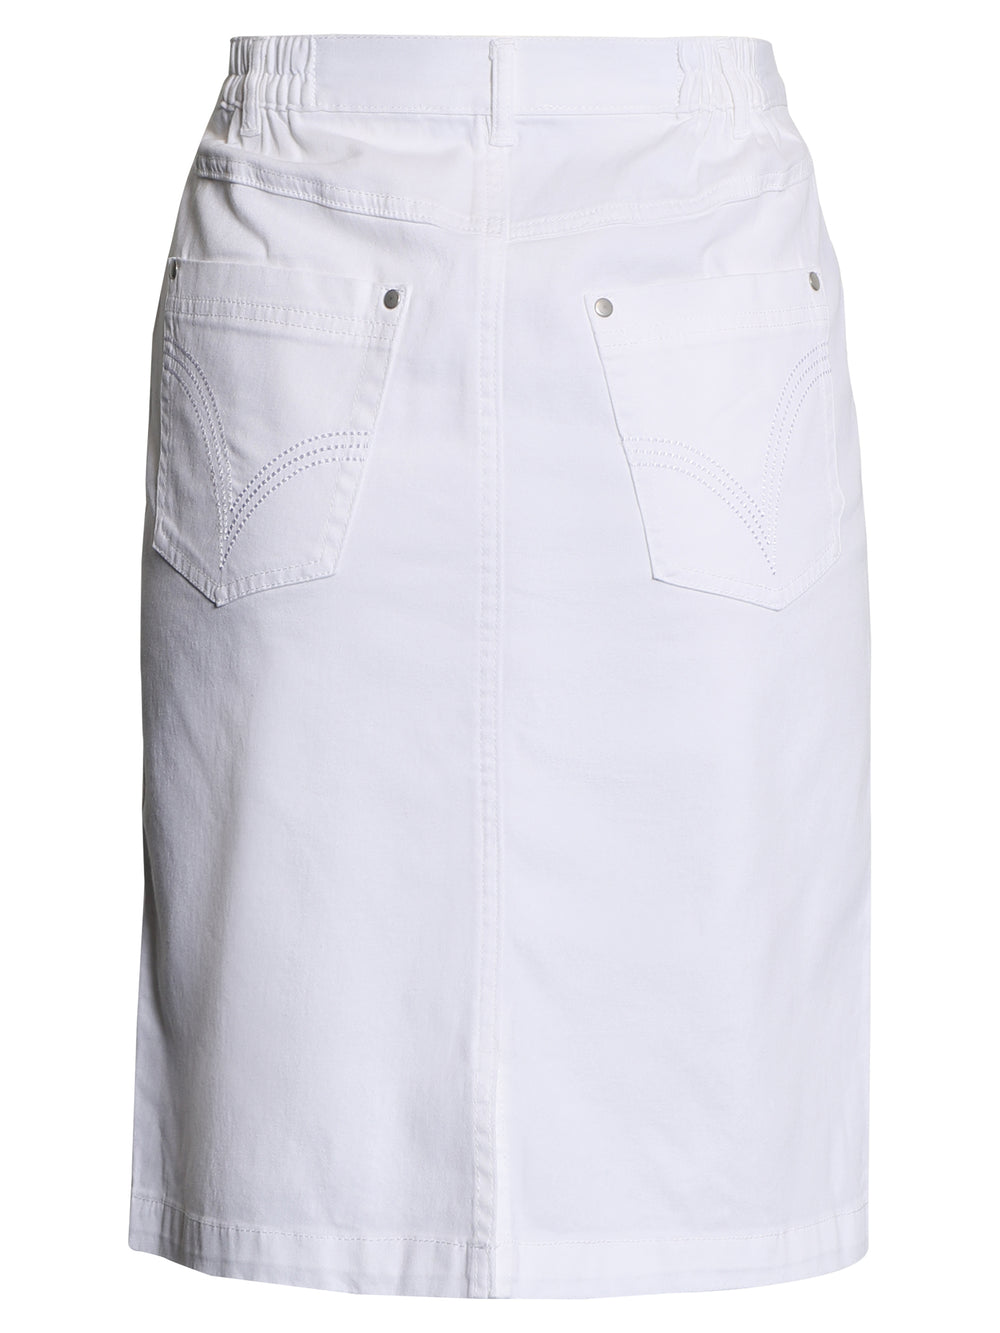 witte rechte rok op knielengte-brandtex-206420